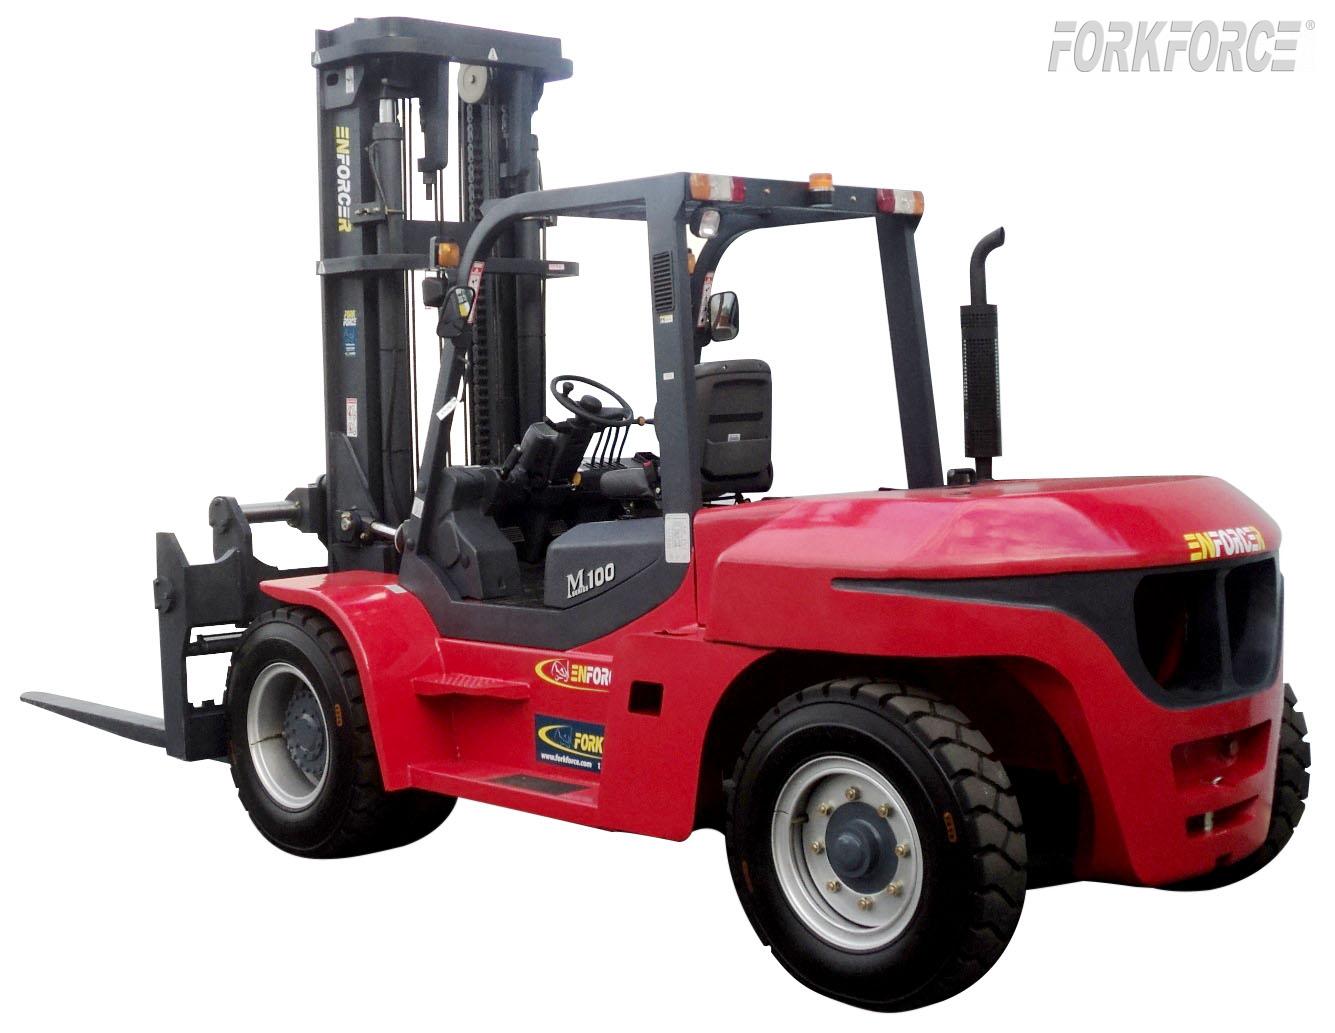 Enforcer 12T Diesel Forklift